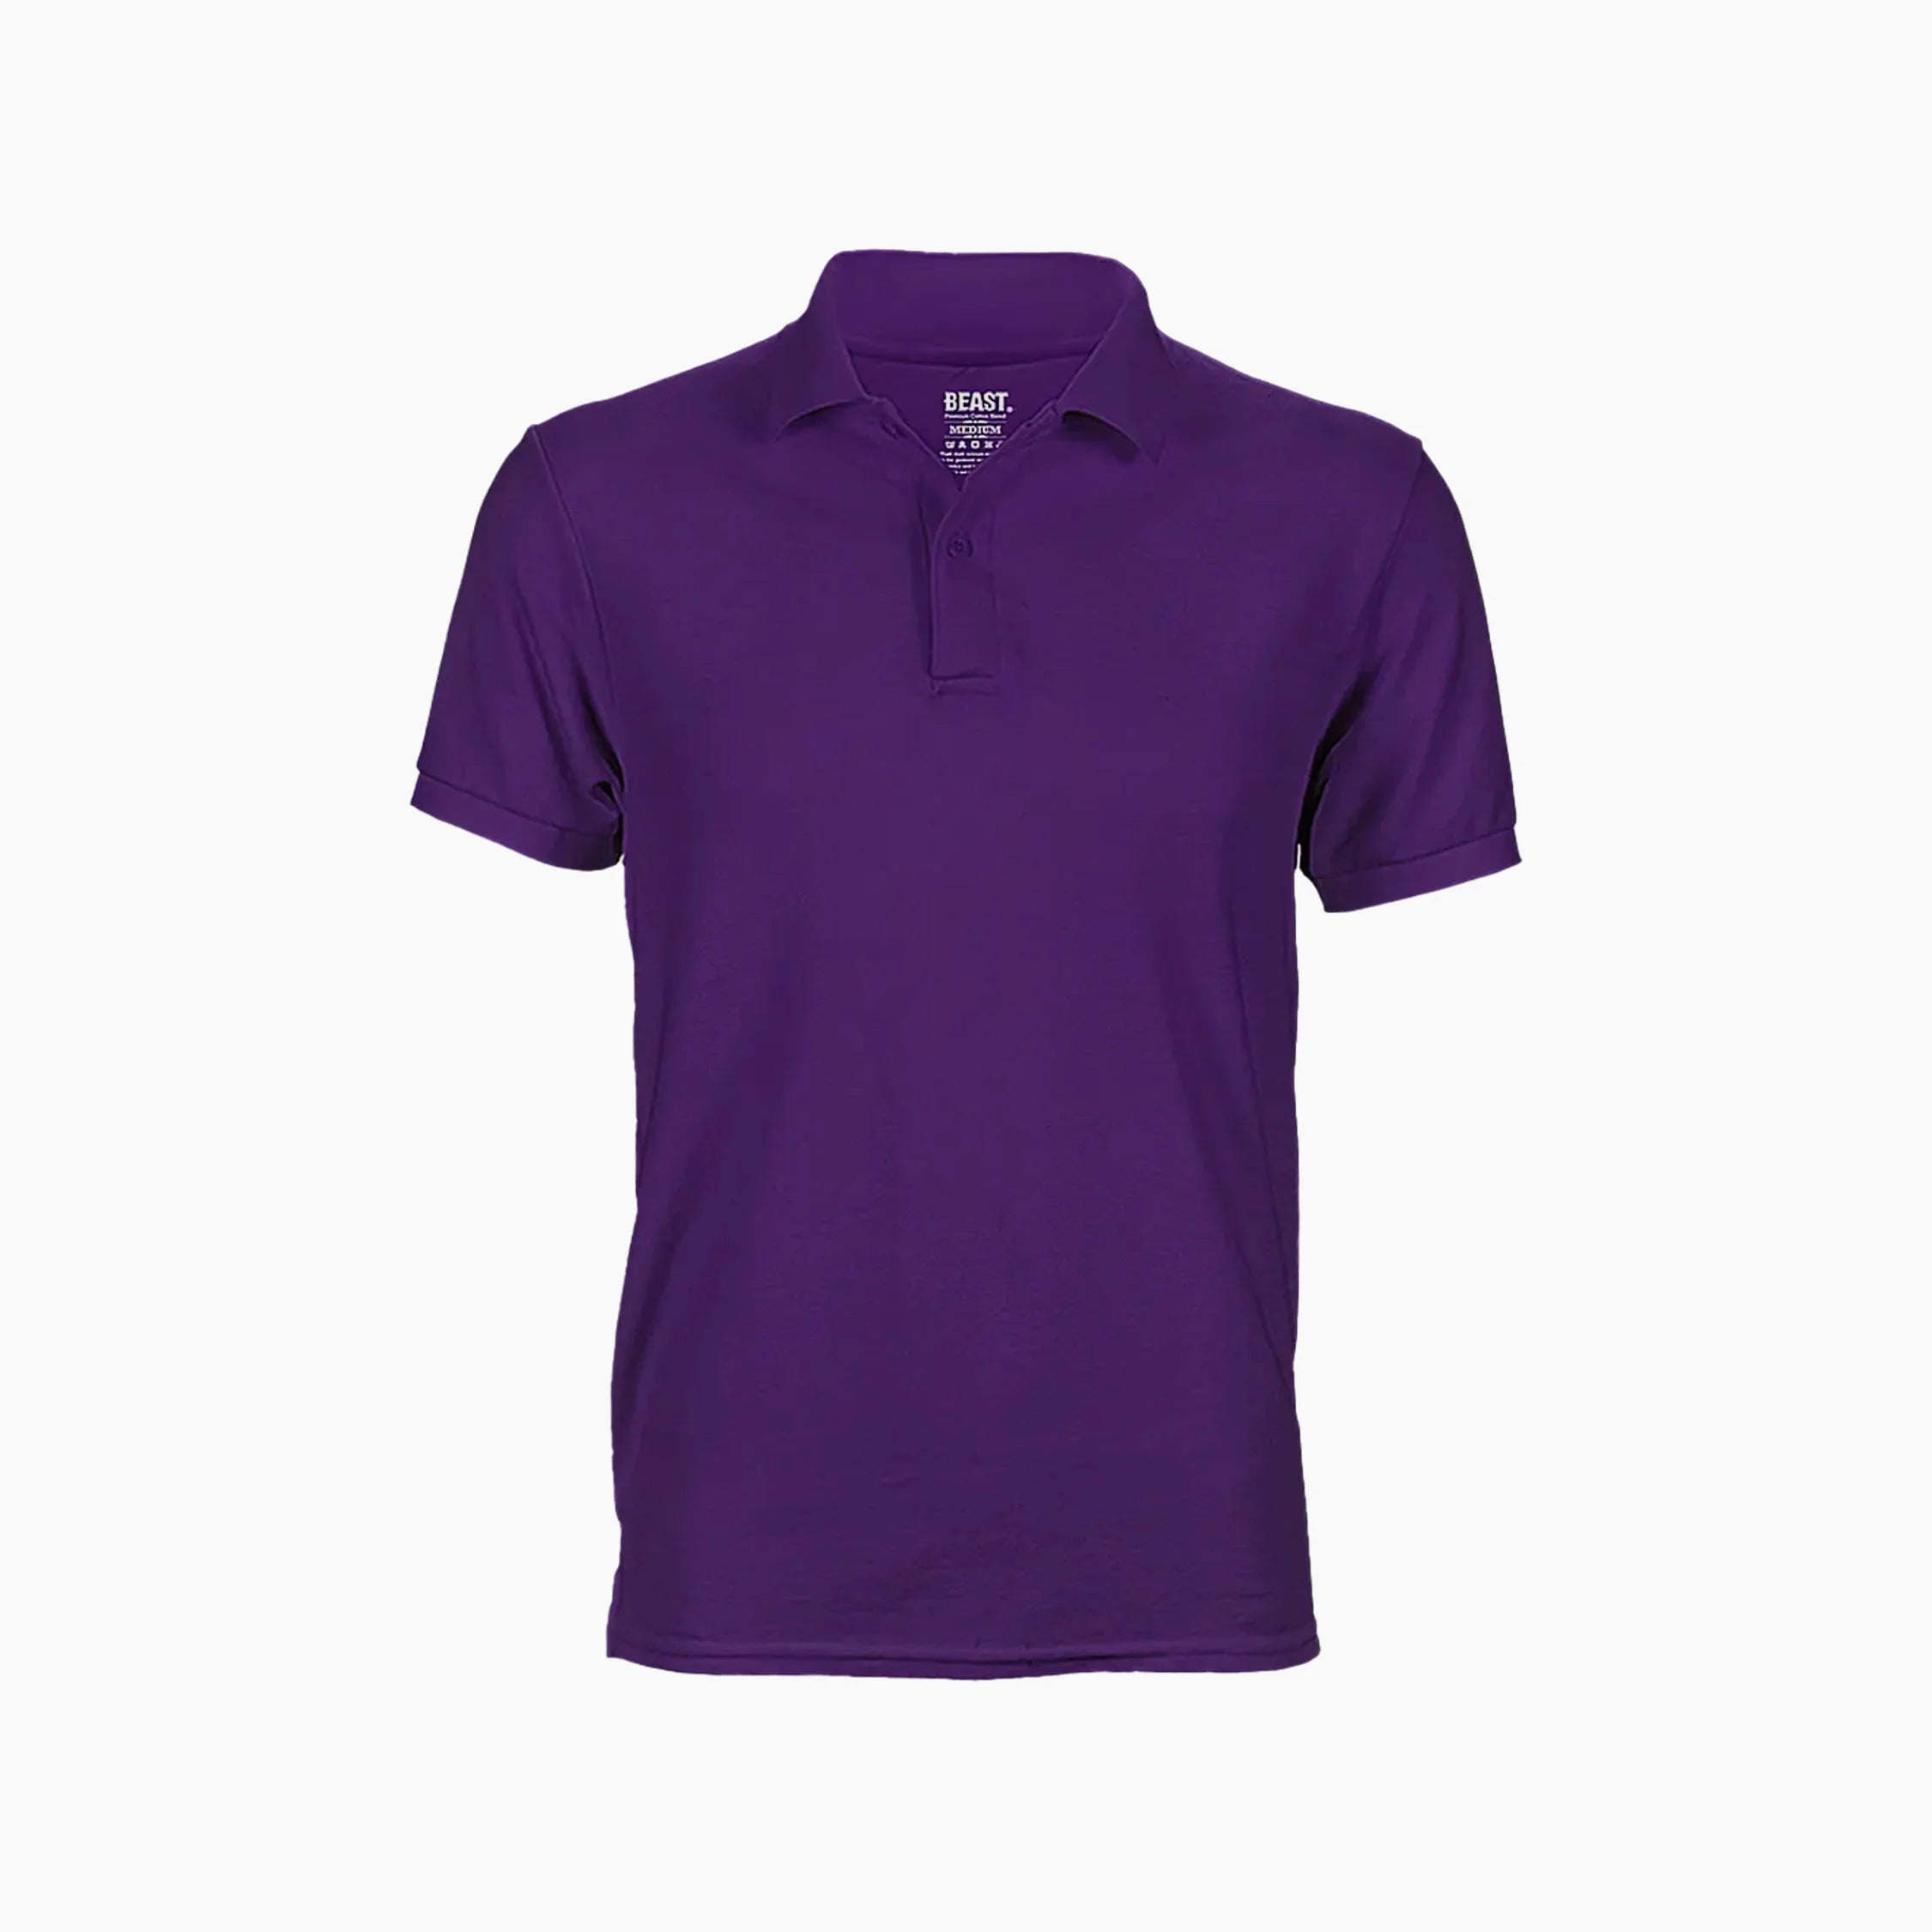 beast-purple-polo-t-shirt